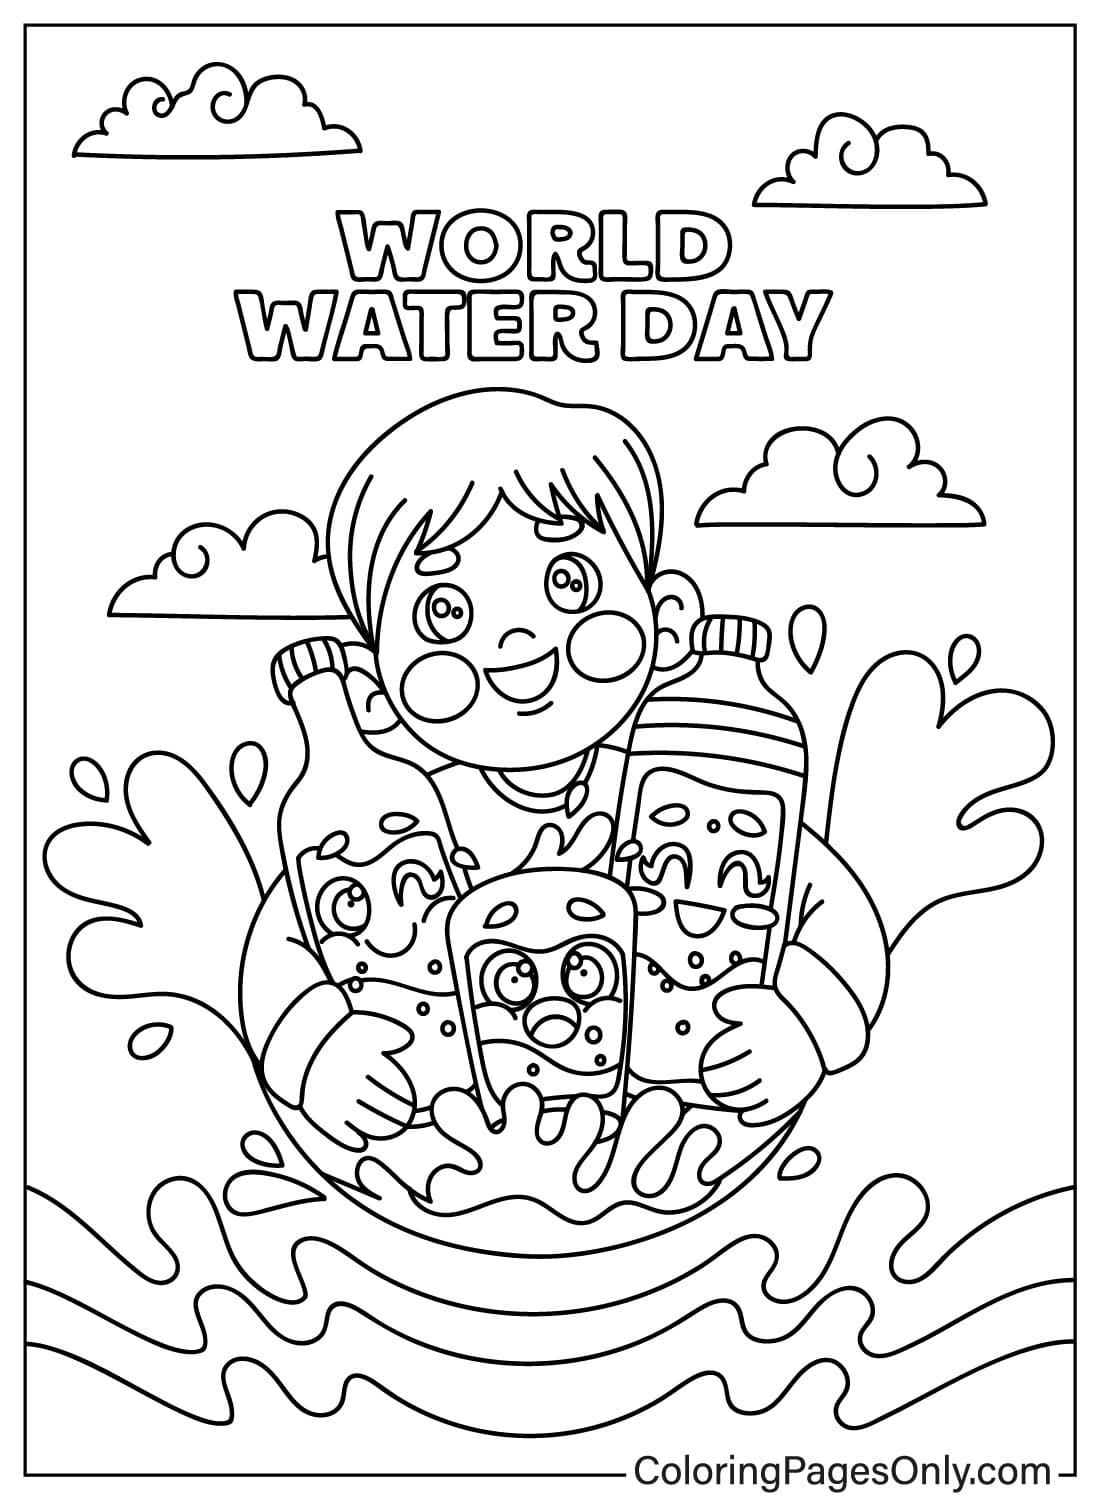 صفحة التلوين للأطفال ويوم المياه العالمي من يوم المياه العالمي